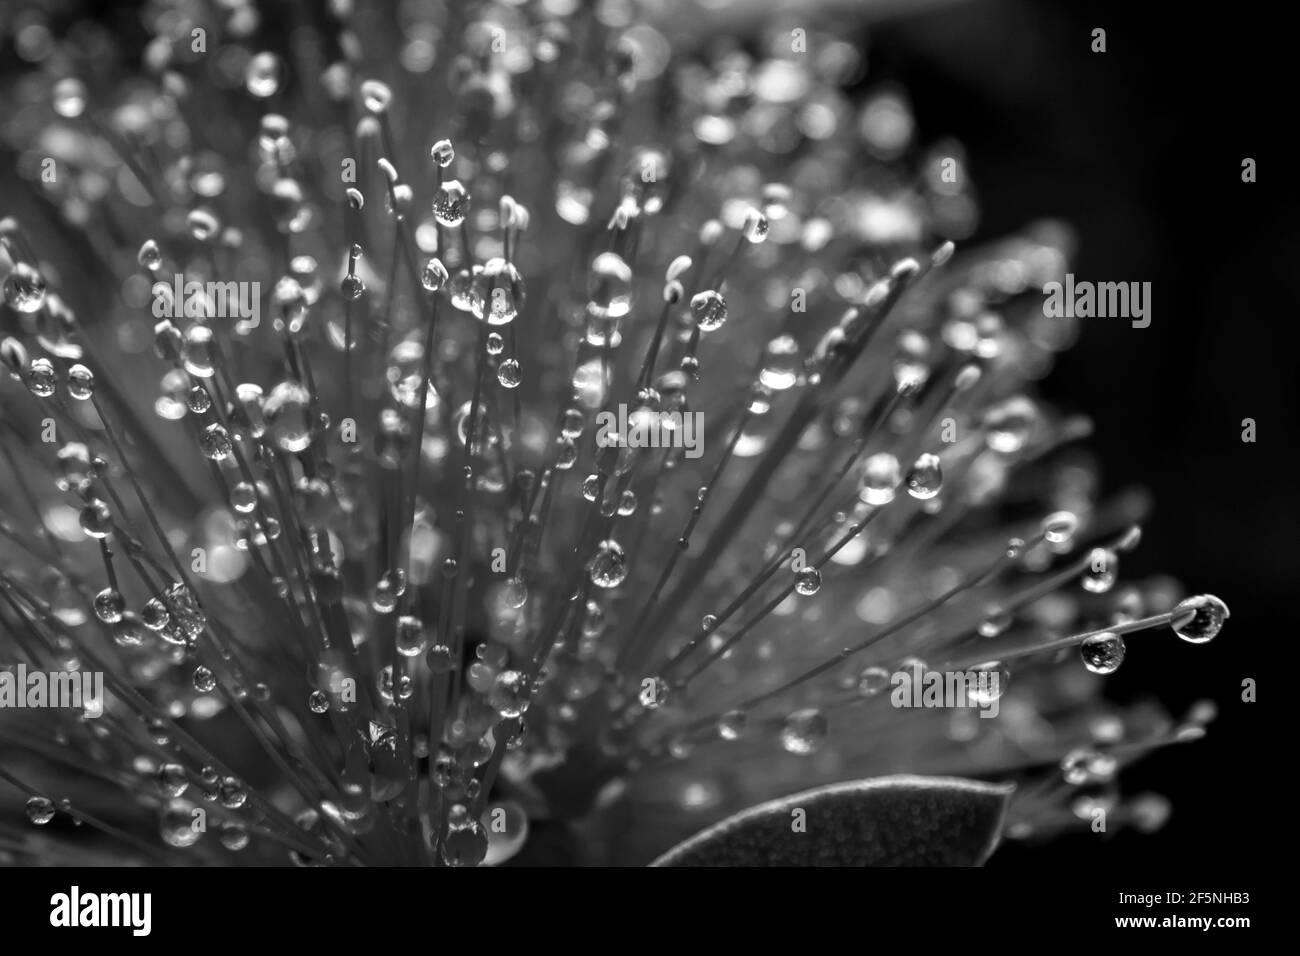 Gros plan de petites gouttelettes d'eau capturées dans les petits filaments de la fleur piquée d'un pinceau, en noir et blanc Banque D'Images